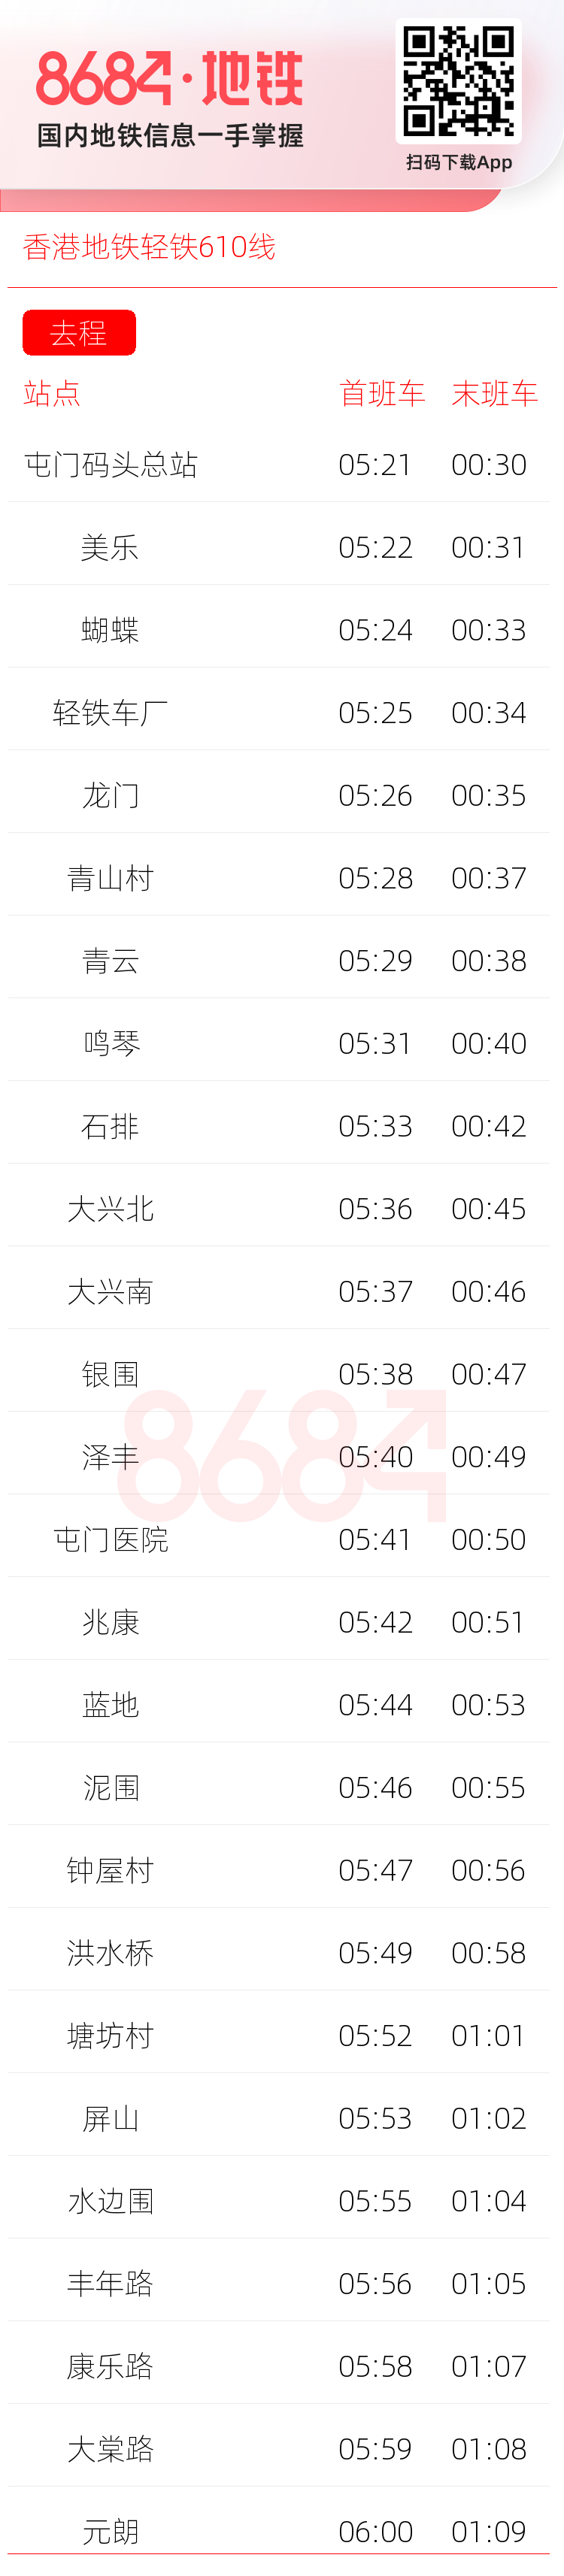 香港地铁轻铁610线运营时间表